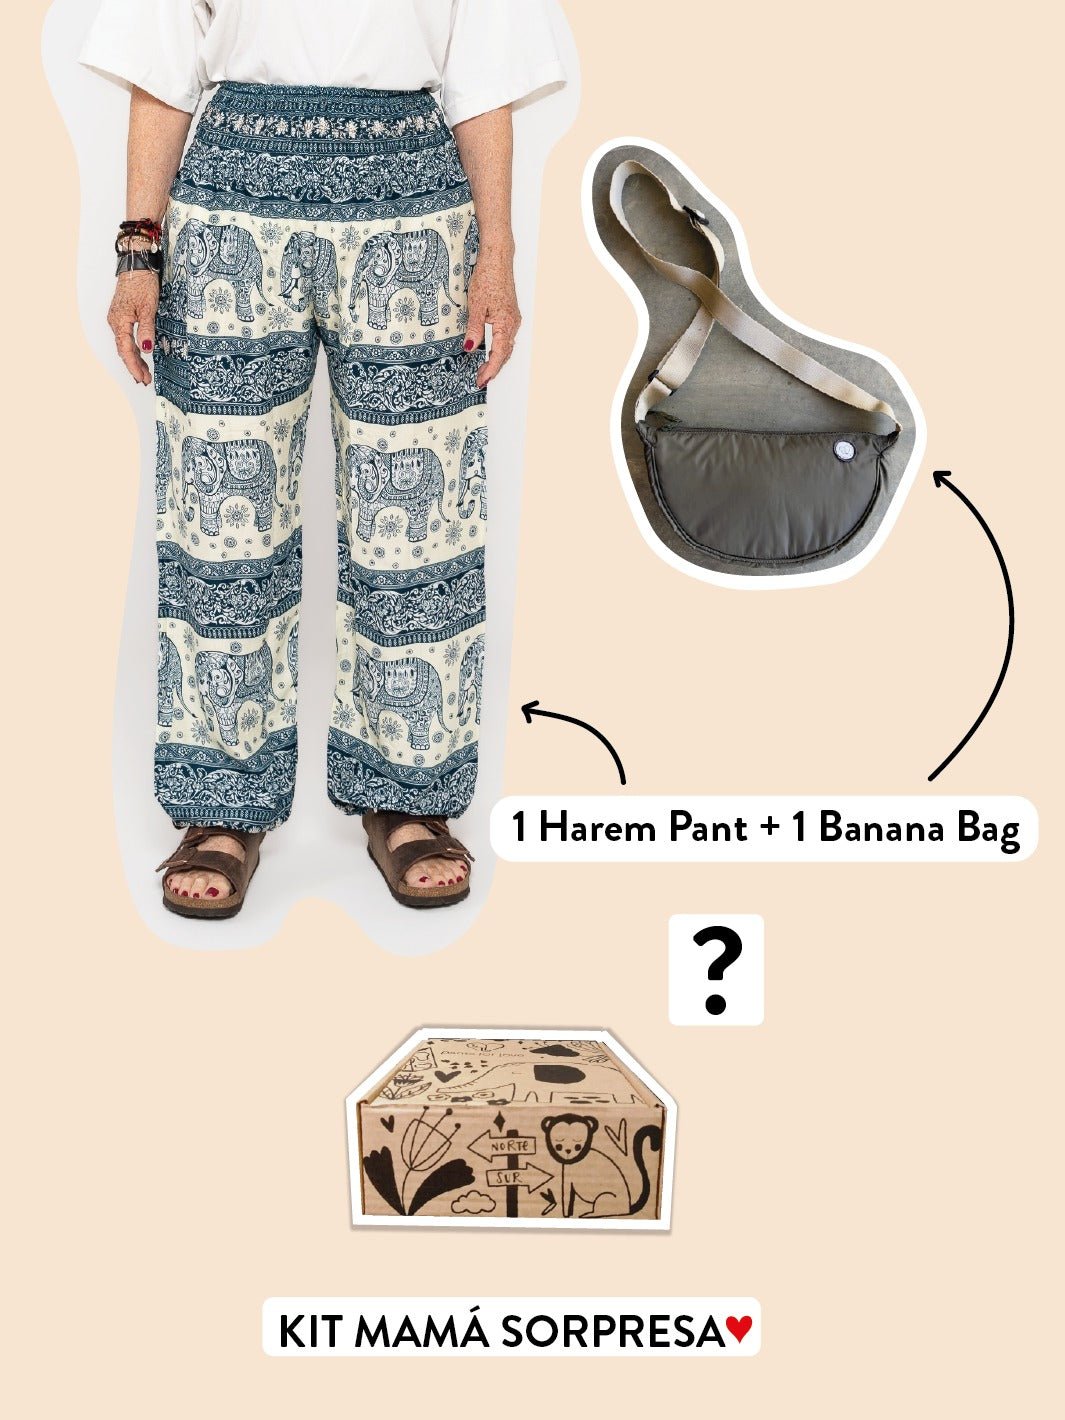 KIT MAMÁ SORPRESA: 1 HAREM PANT + 1 BANANA BAG - Pantsforlove Pantalones anchos, pantalones yoga